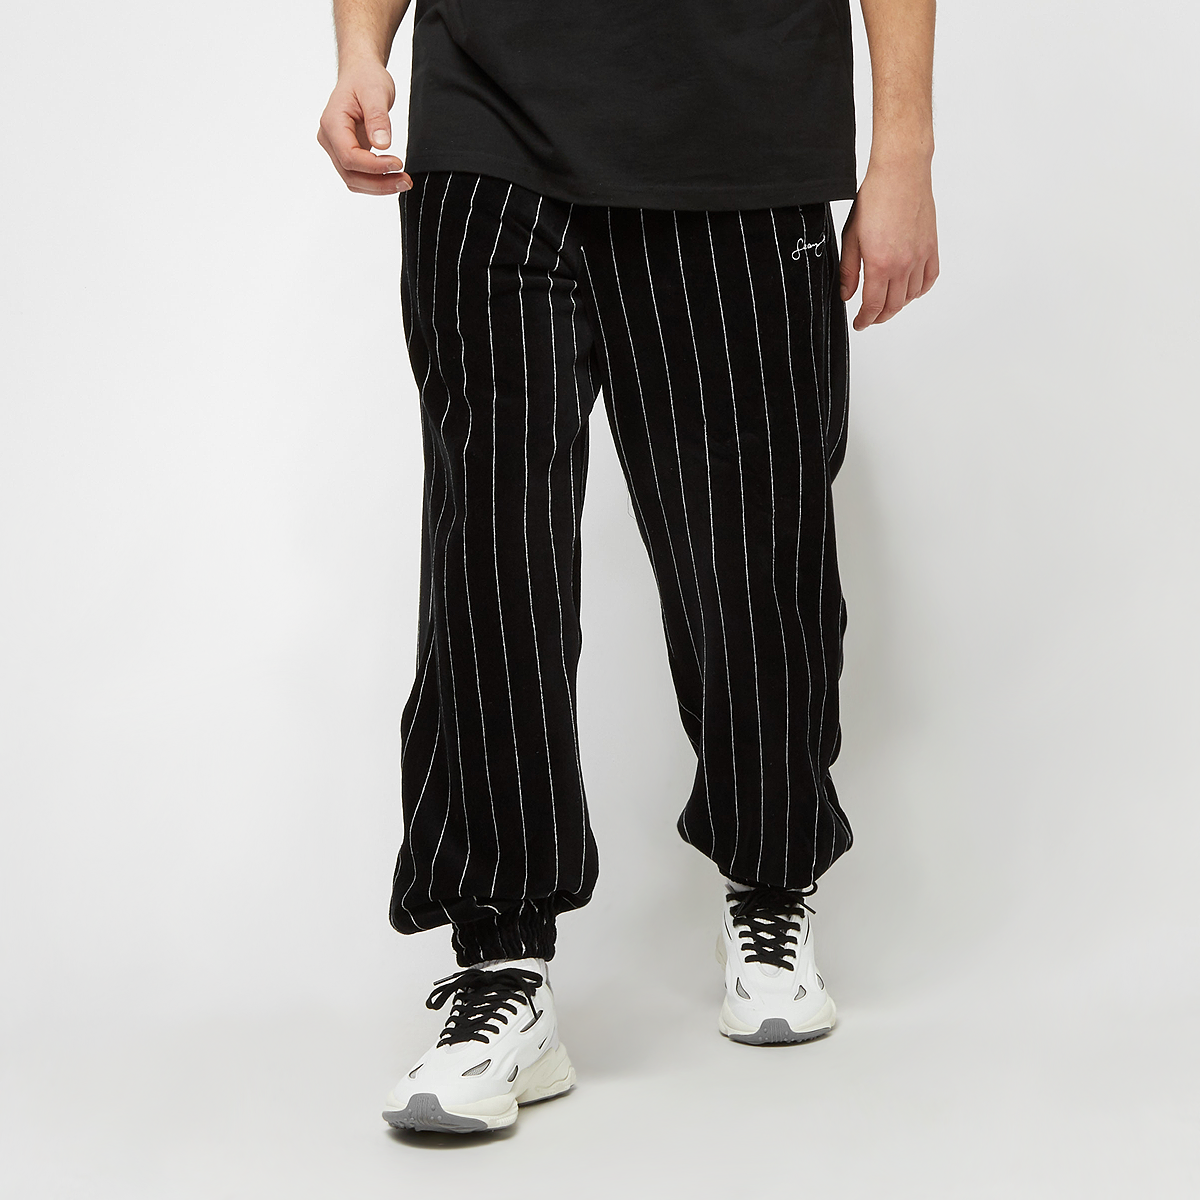 sean john script logo pinstripe  velours trackpants, pantalons de survêtement, vêtements, black/white, taille: xl, tailles disponibles:m,l,xl